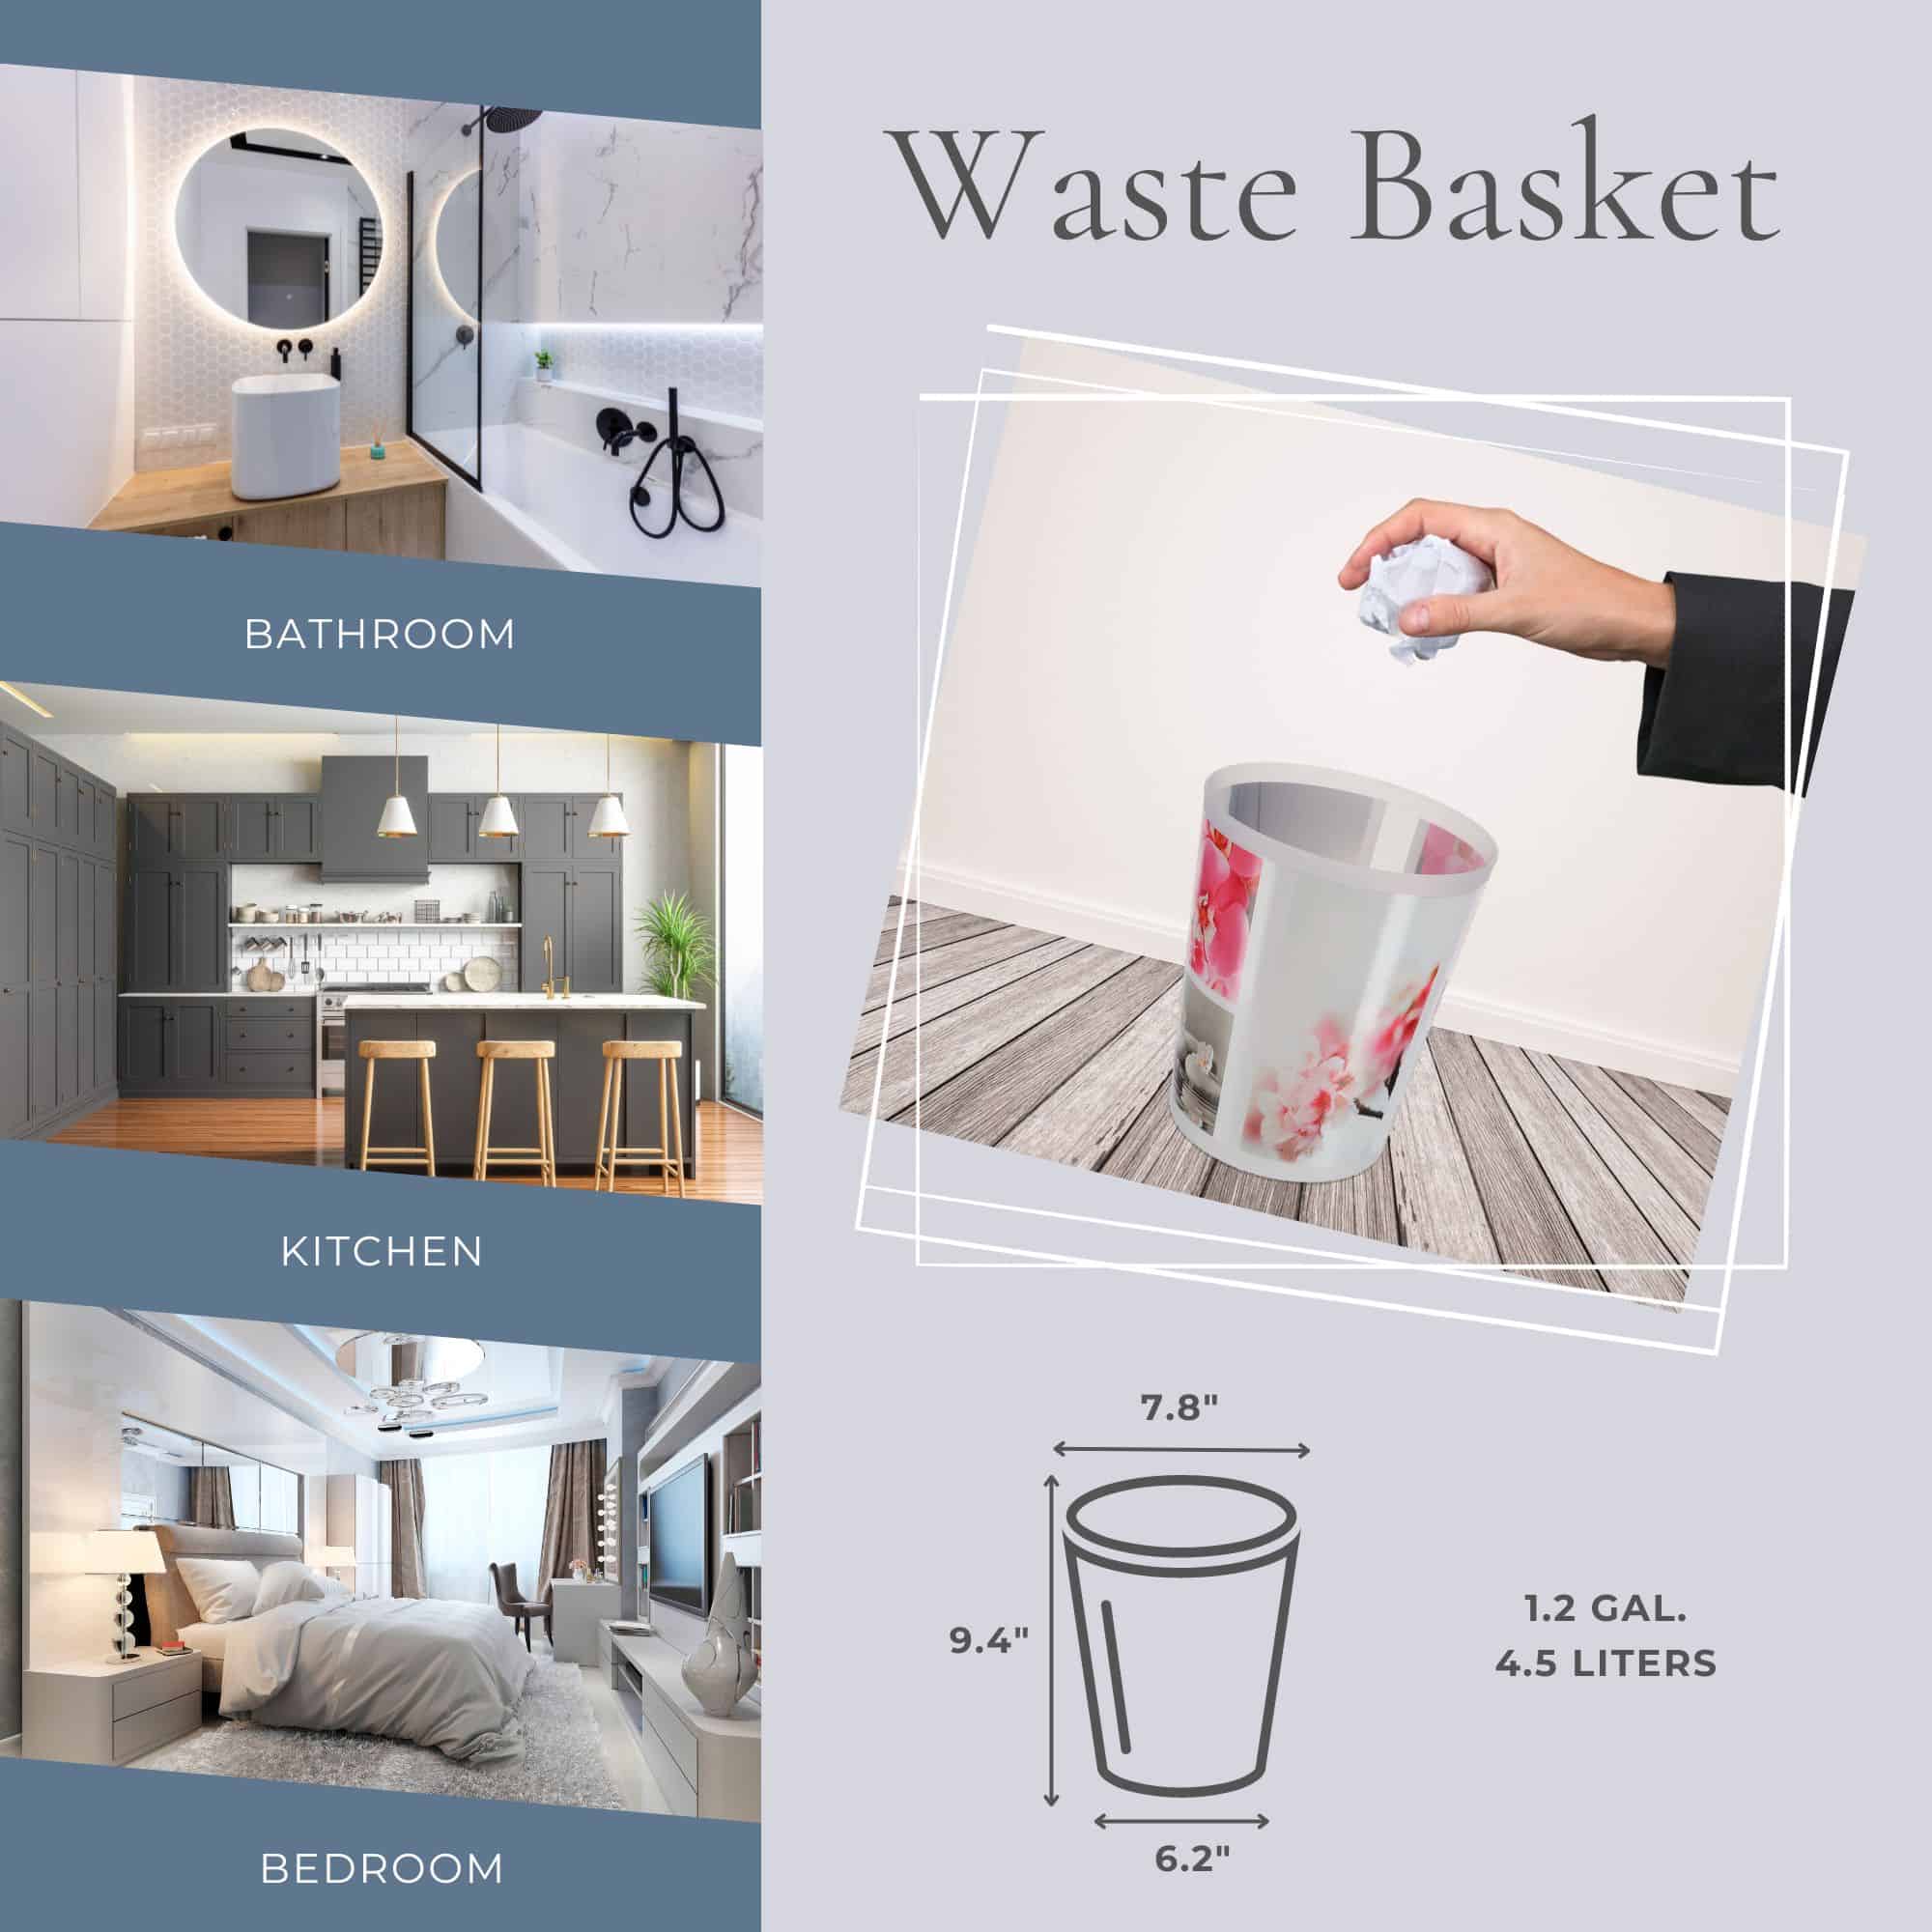 waste basket for bathroom, kitchen, bedroom, office